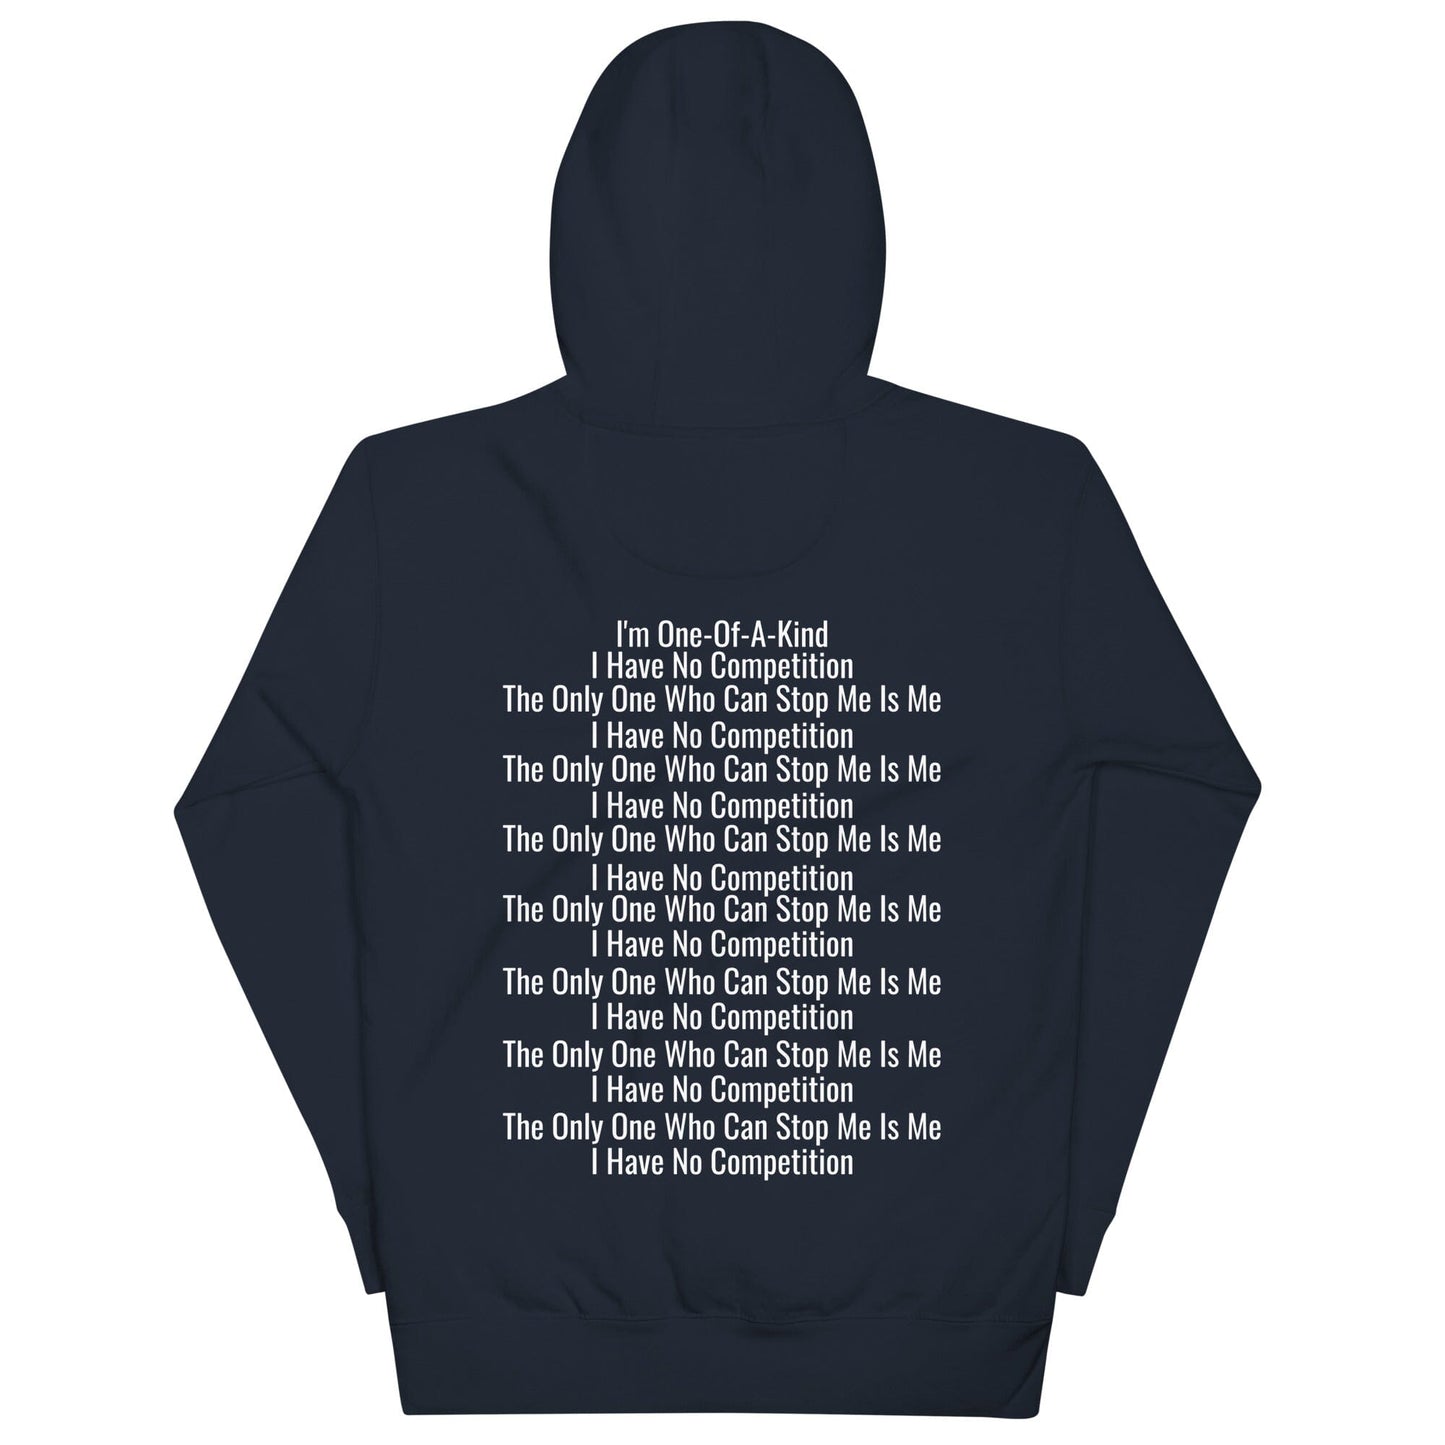 ME vs ME unisex hoodie